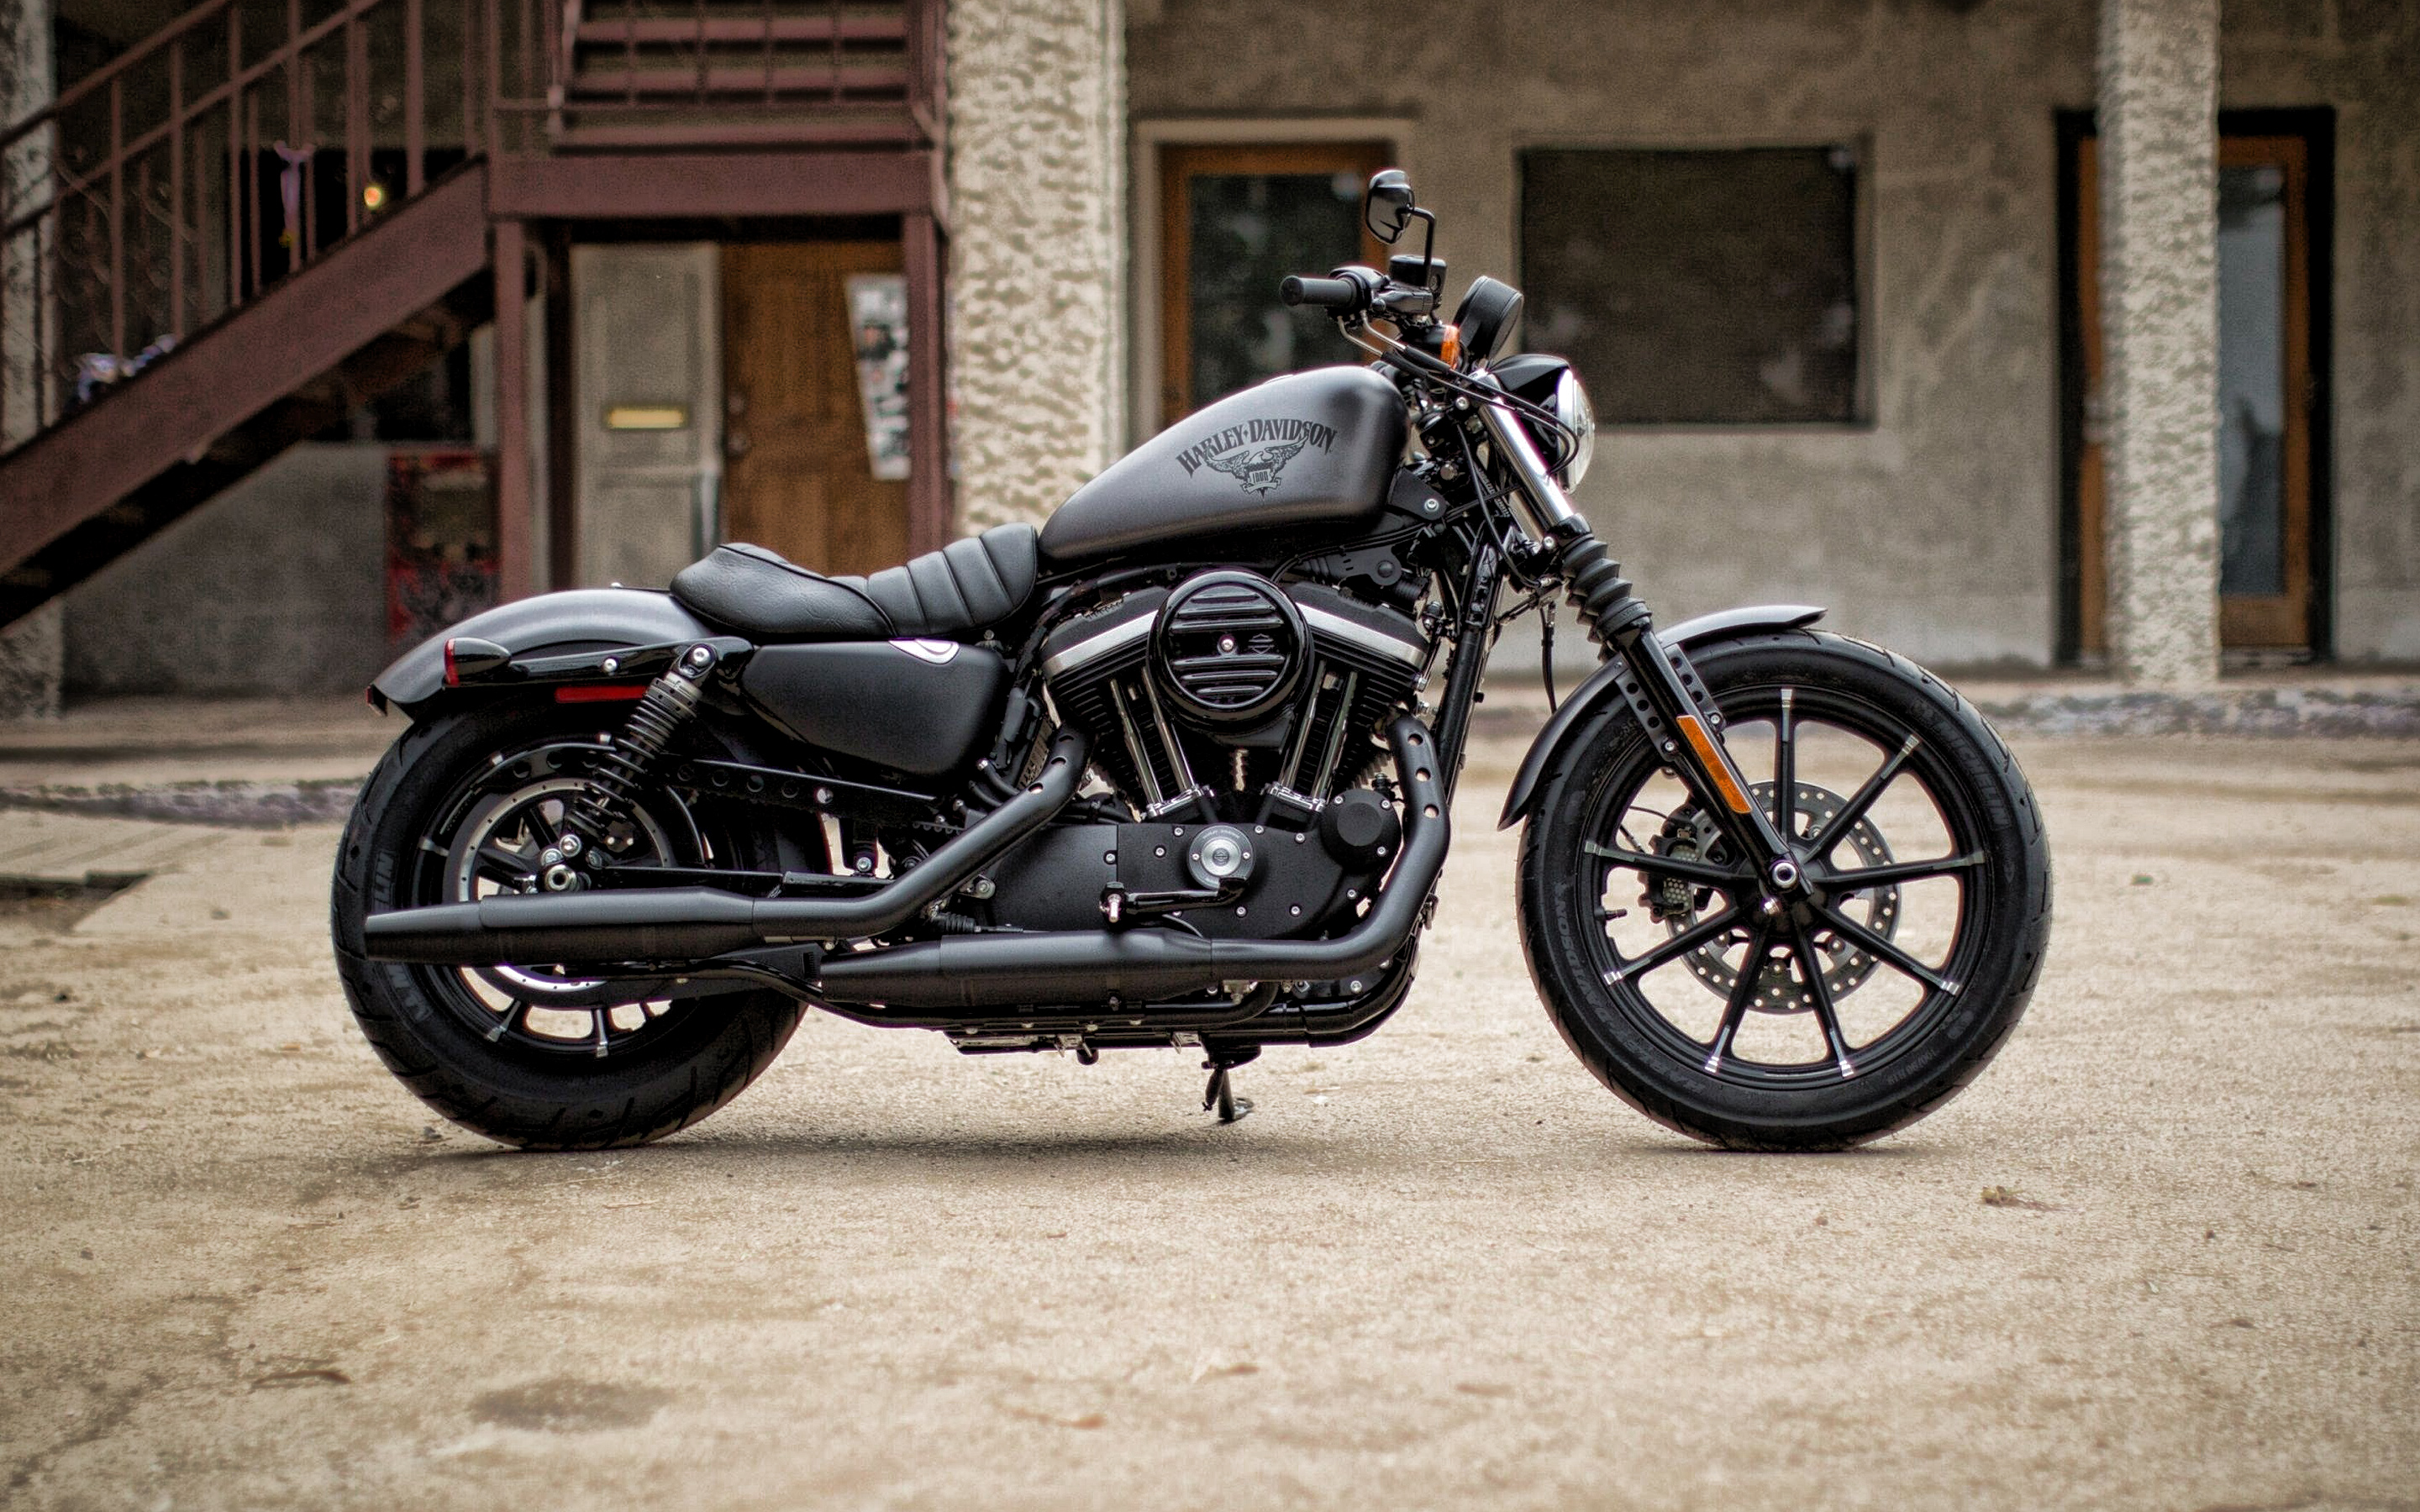 Harley Davidson Iron 883, 2019, Black Motorcycle, Cool - Harley Davidson Iron 883 Grey - HD Wallpaper 